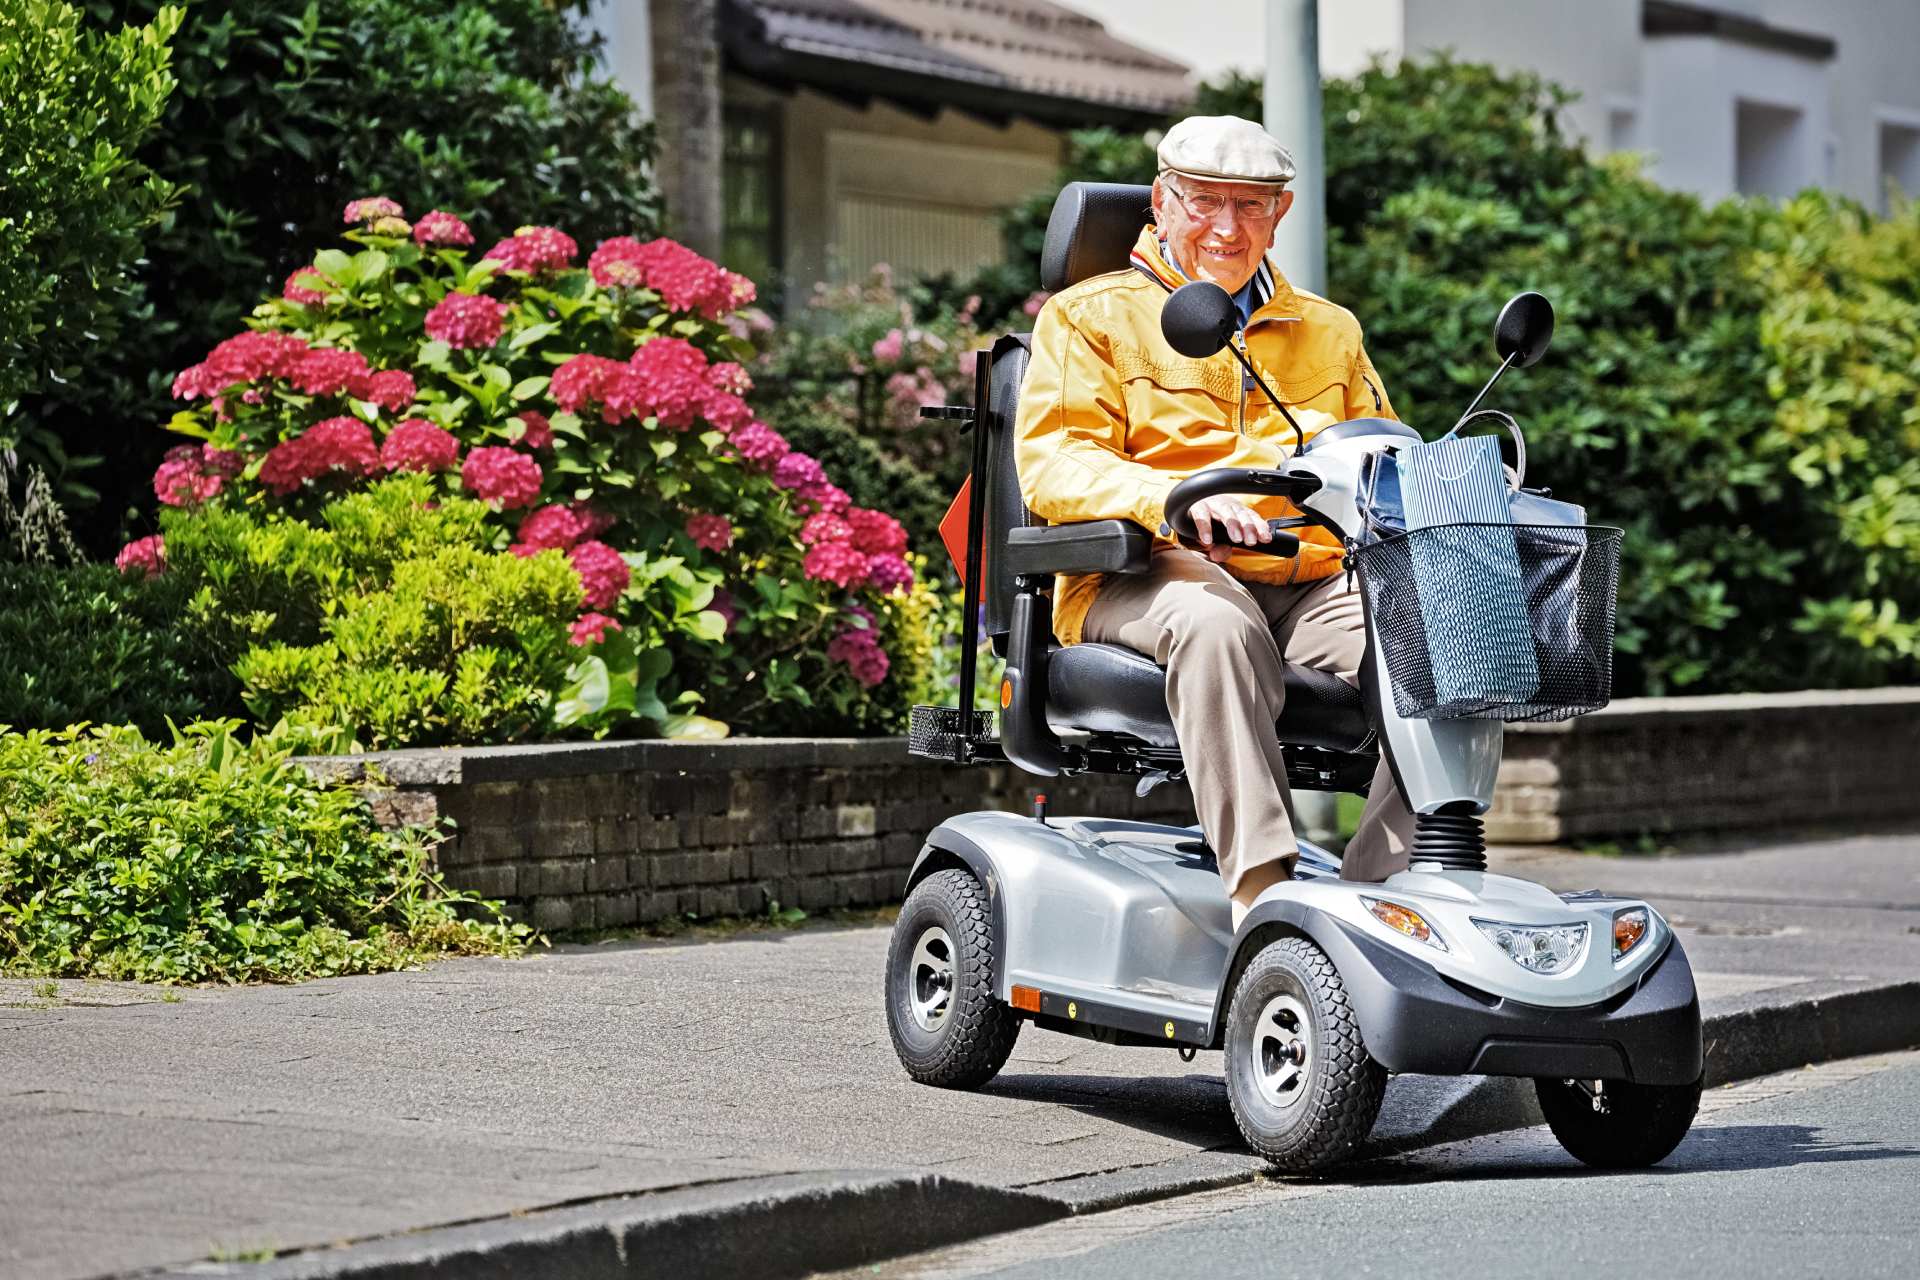 Scooter électrique pour personne à mobilité réduite